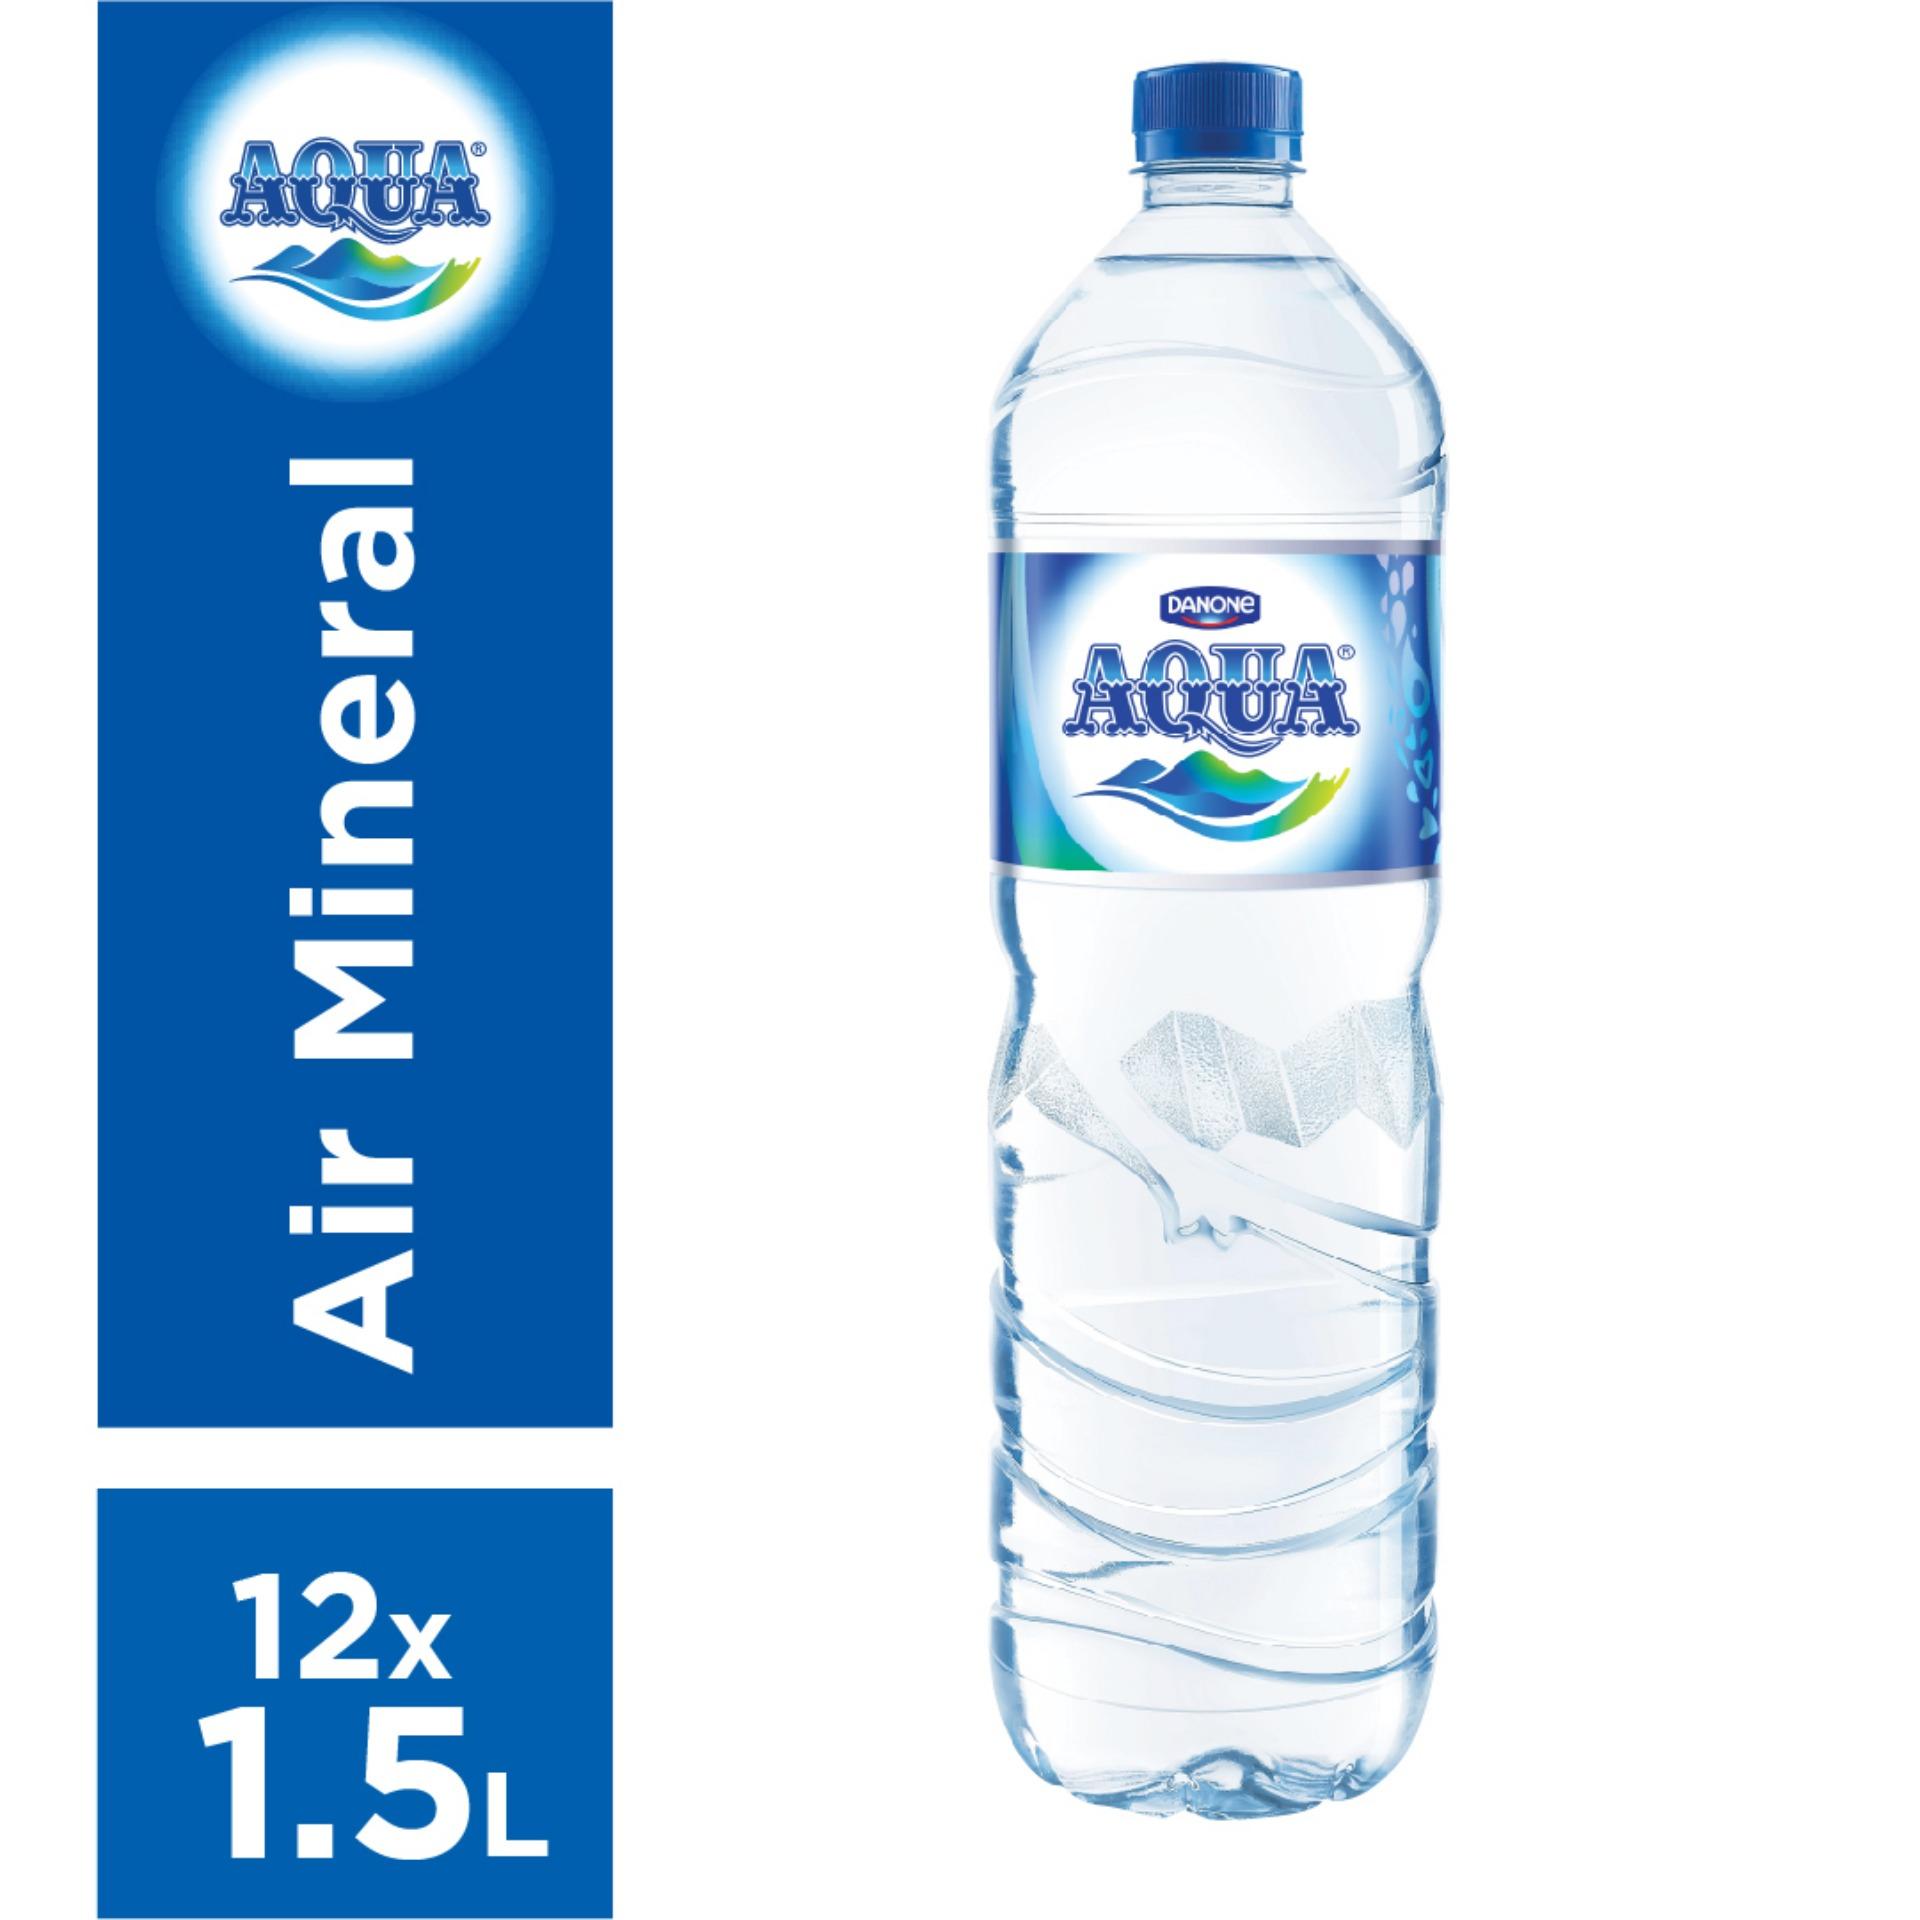 Sketsa Gambar Botol Aqua Terbaru - Kumpulan Sketsa Gambar